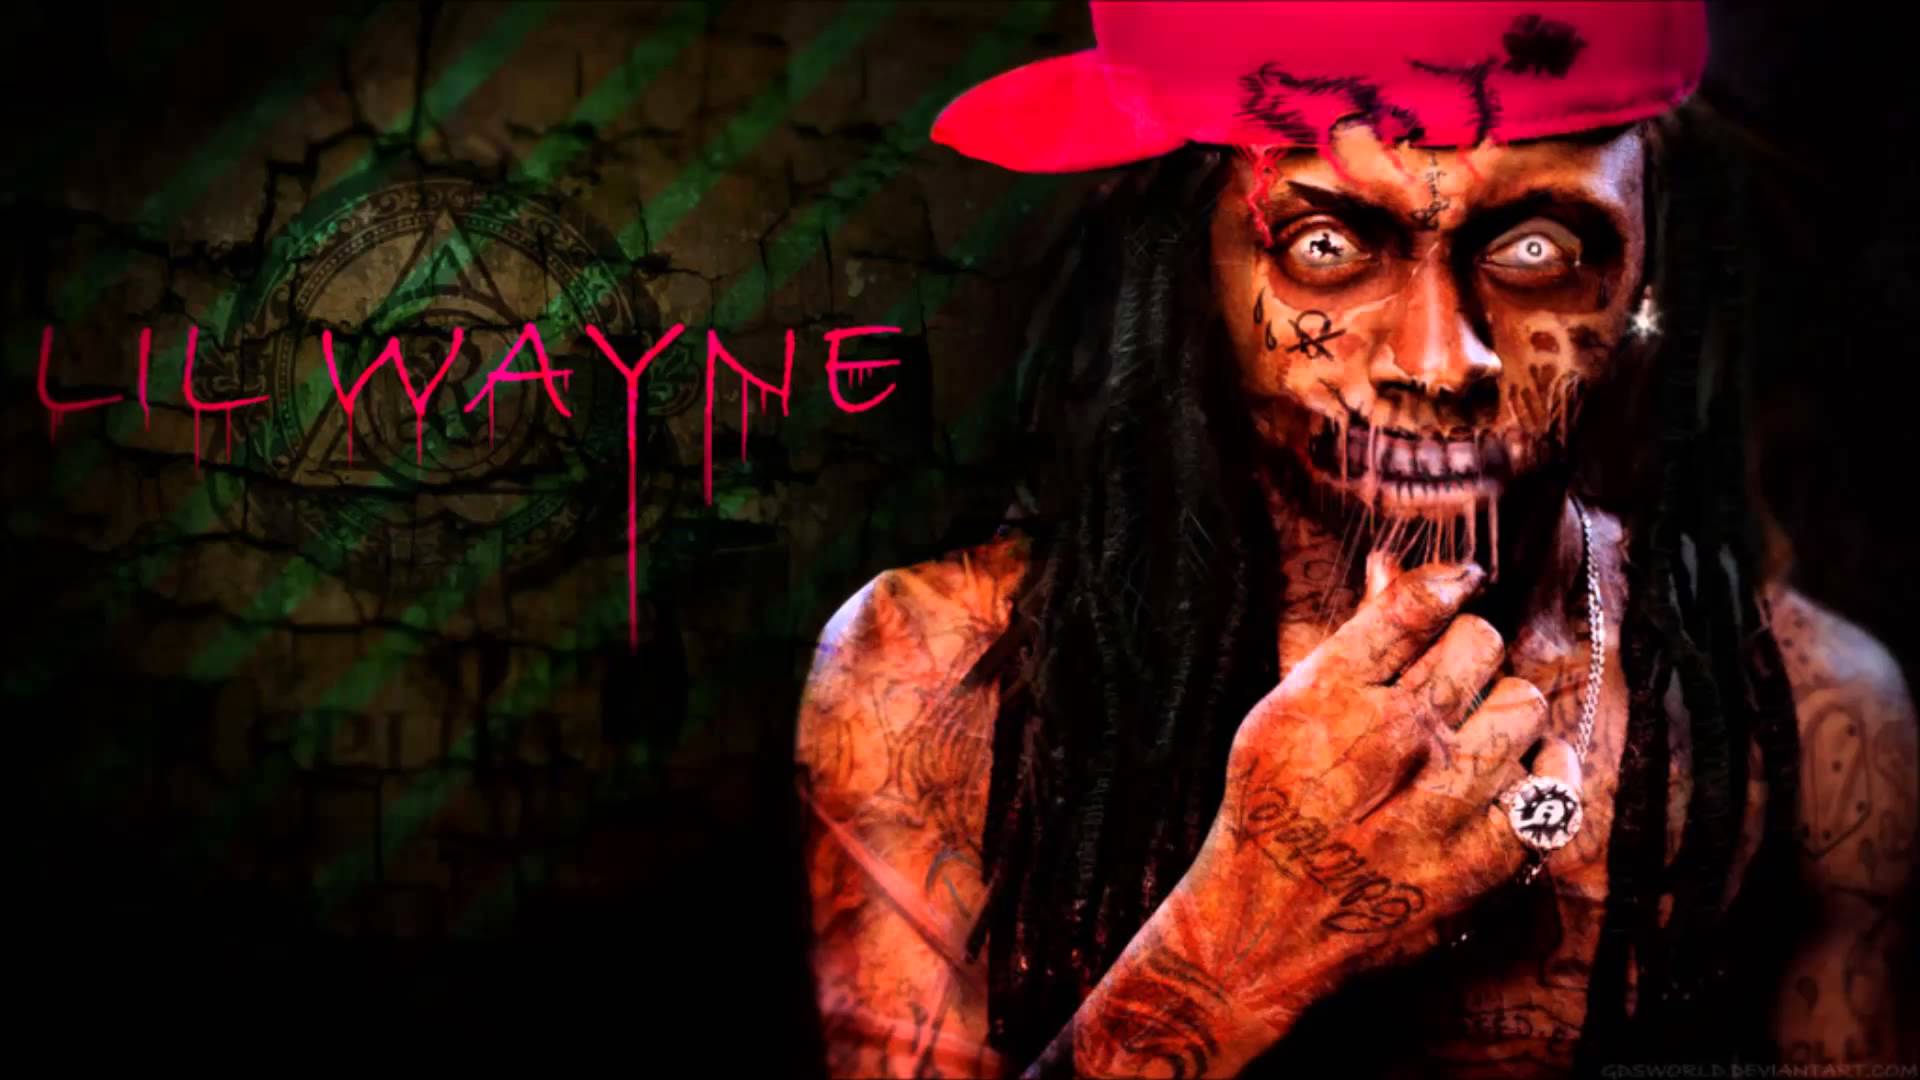 Bulldog Beats - Lil Wayne Beat - YouTube